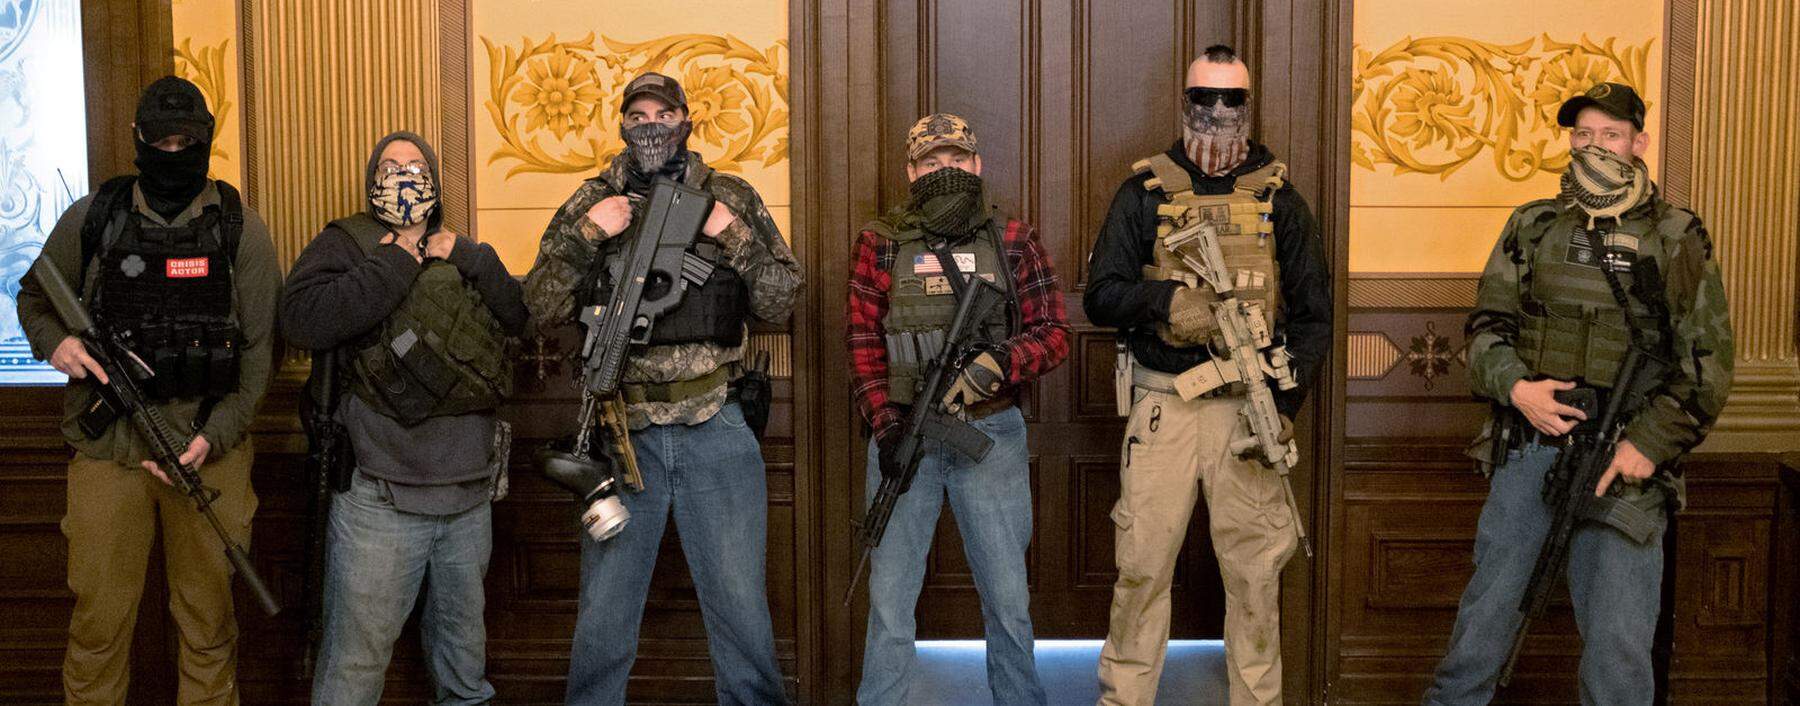 Die Probe aufs Exempel. Schon im Frühjahr drangen bewaffnete Milizionäre ins Parlament von Michigan ein, um gegen den Lockdown und die Gouverneurin zu demonstrieren.